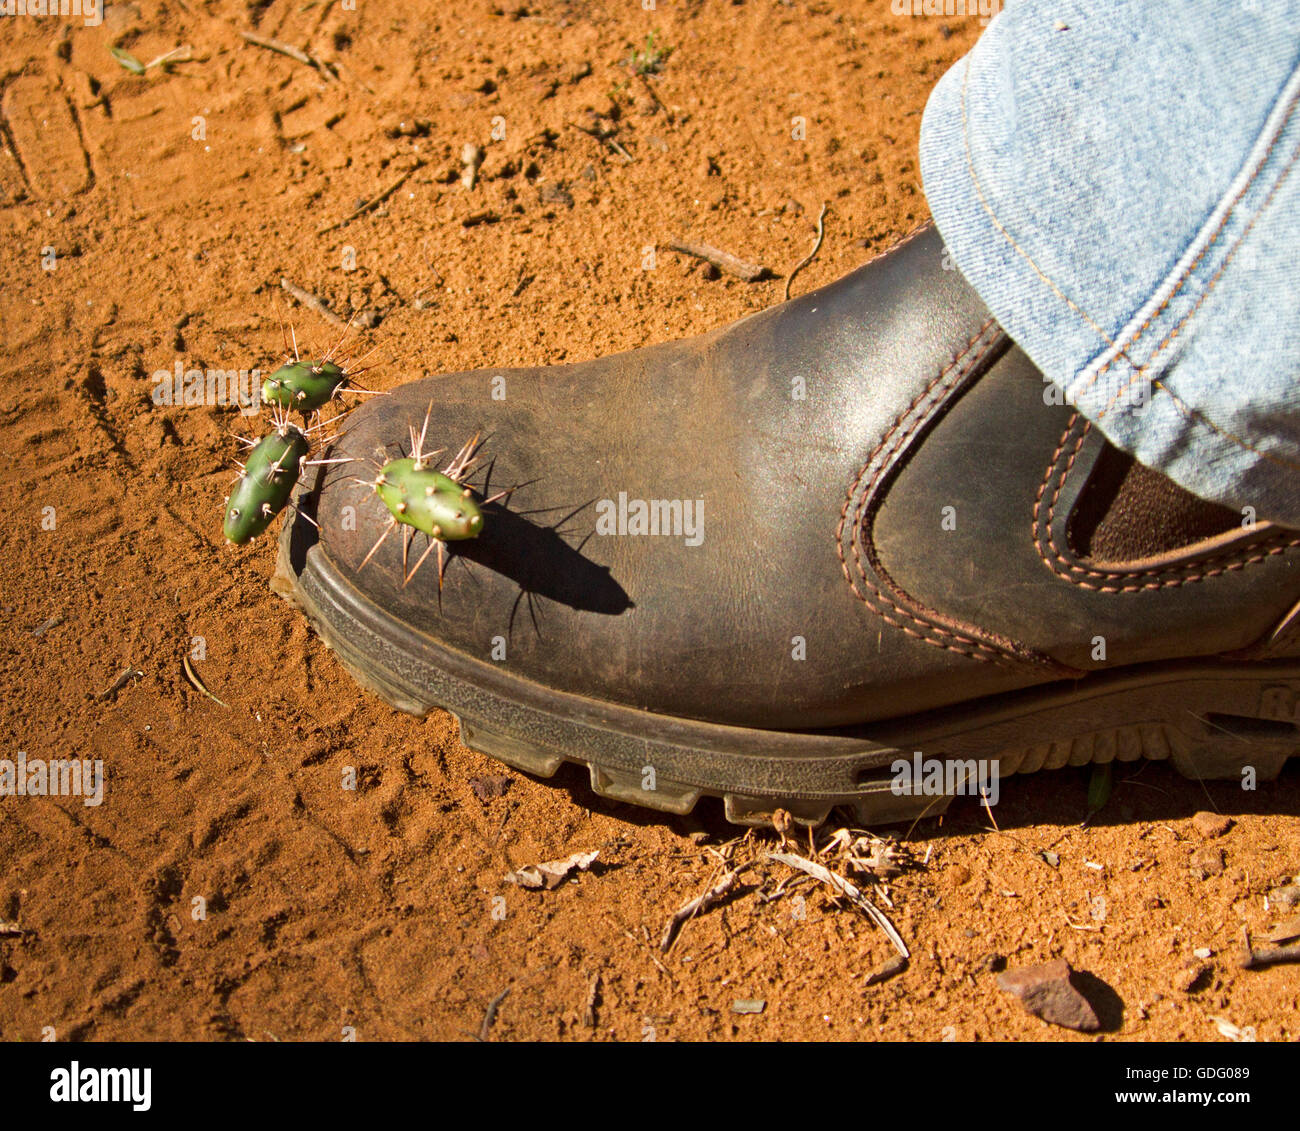 Segmenti di ficodindia / opuntia cactus bloccato in cuoio boot sul piede maschile, metodo naturale di diffusione di erbaccia invasiva, dichiarata una specie di peste Foto Stock